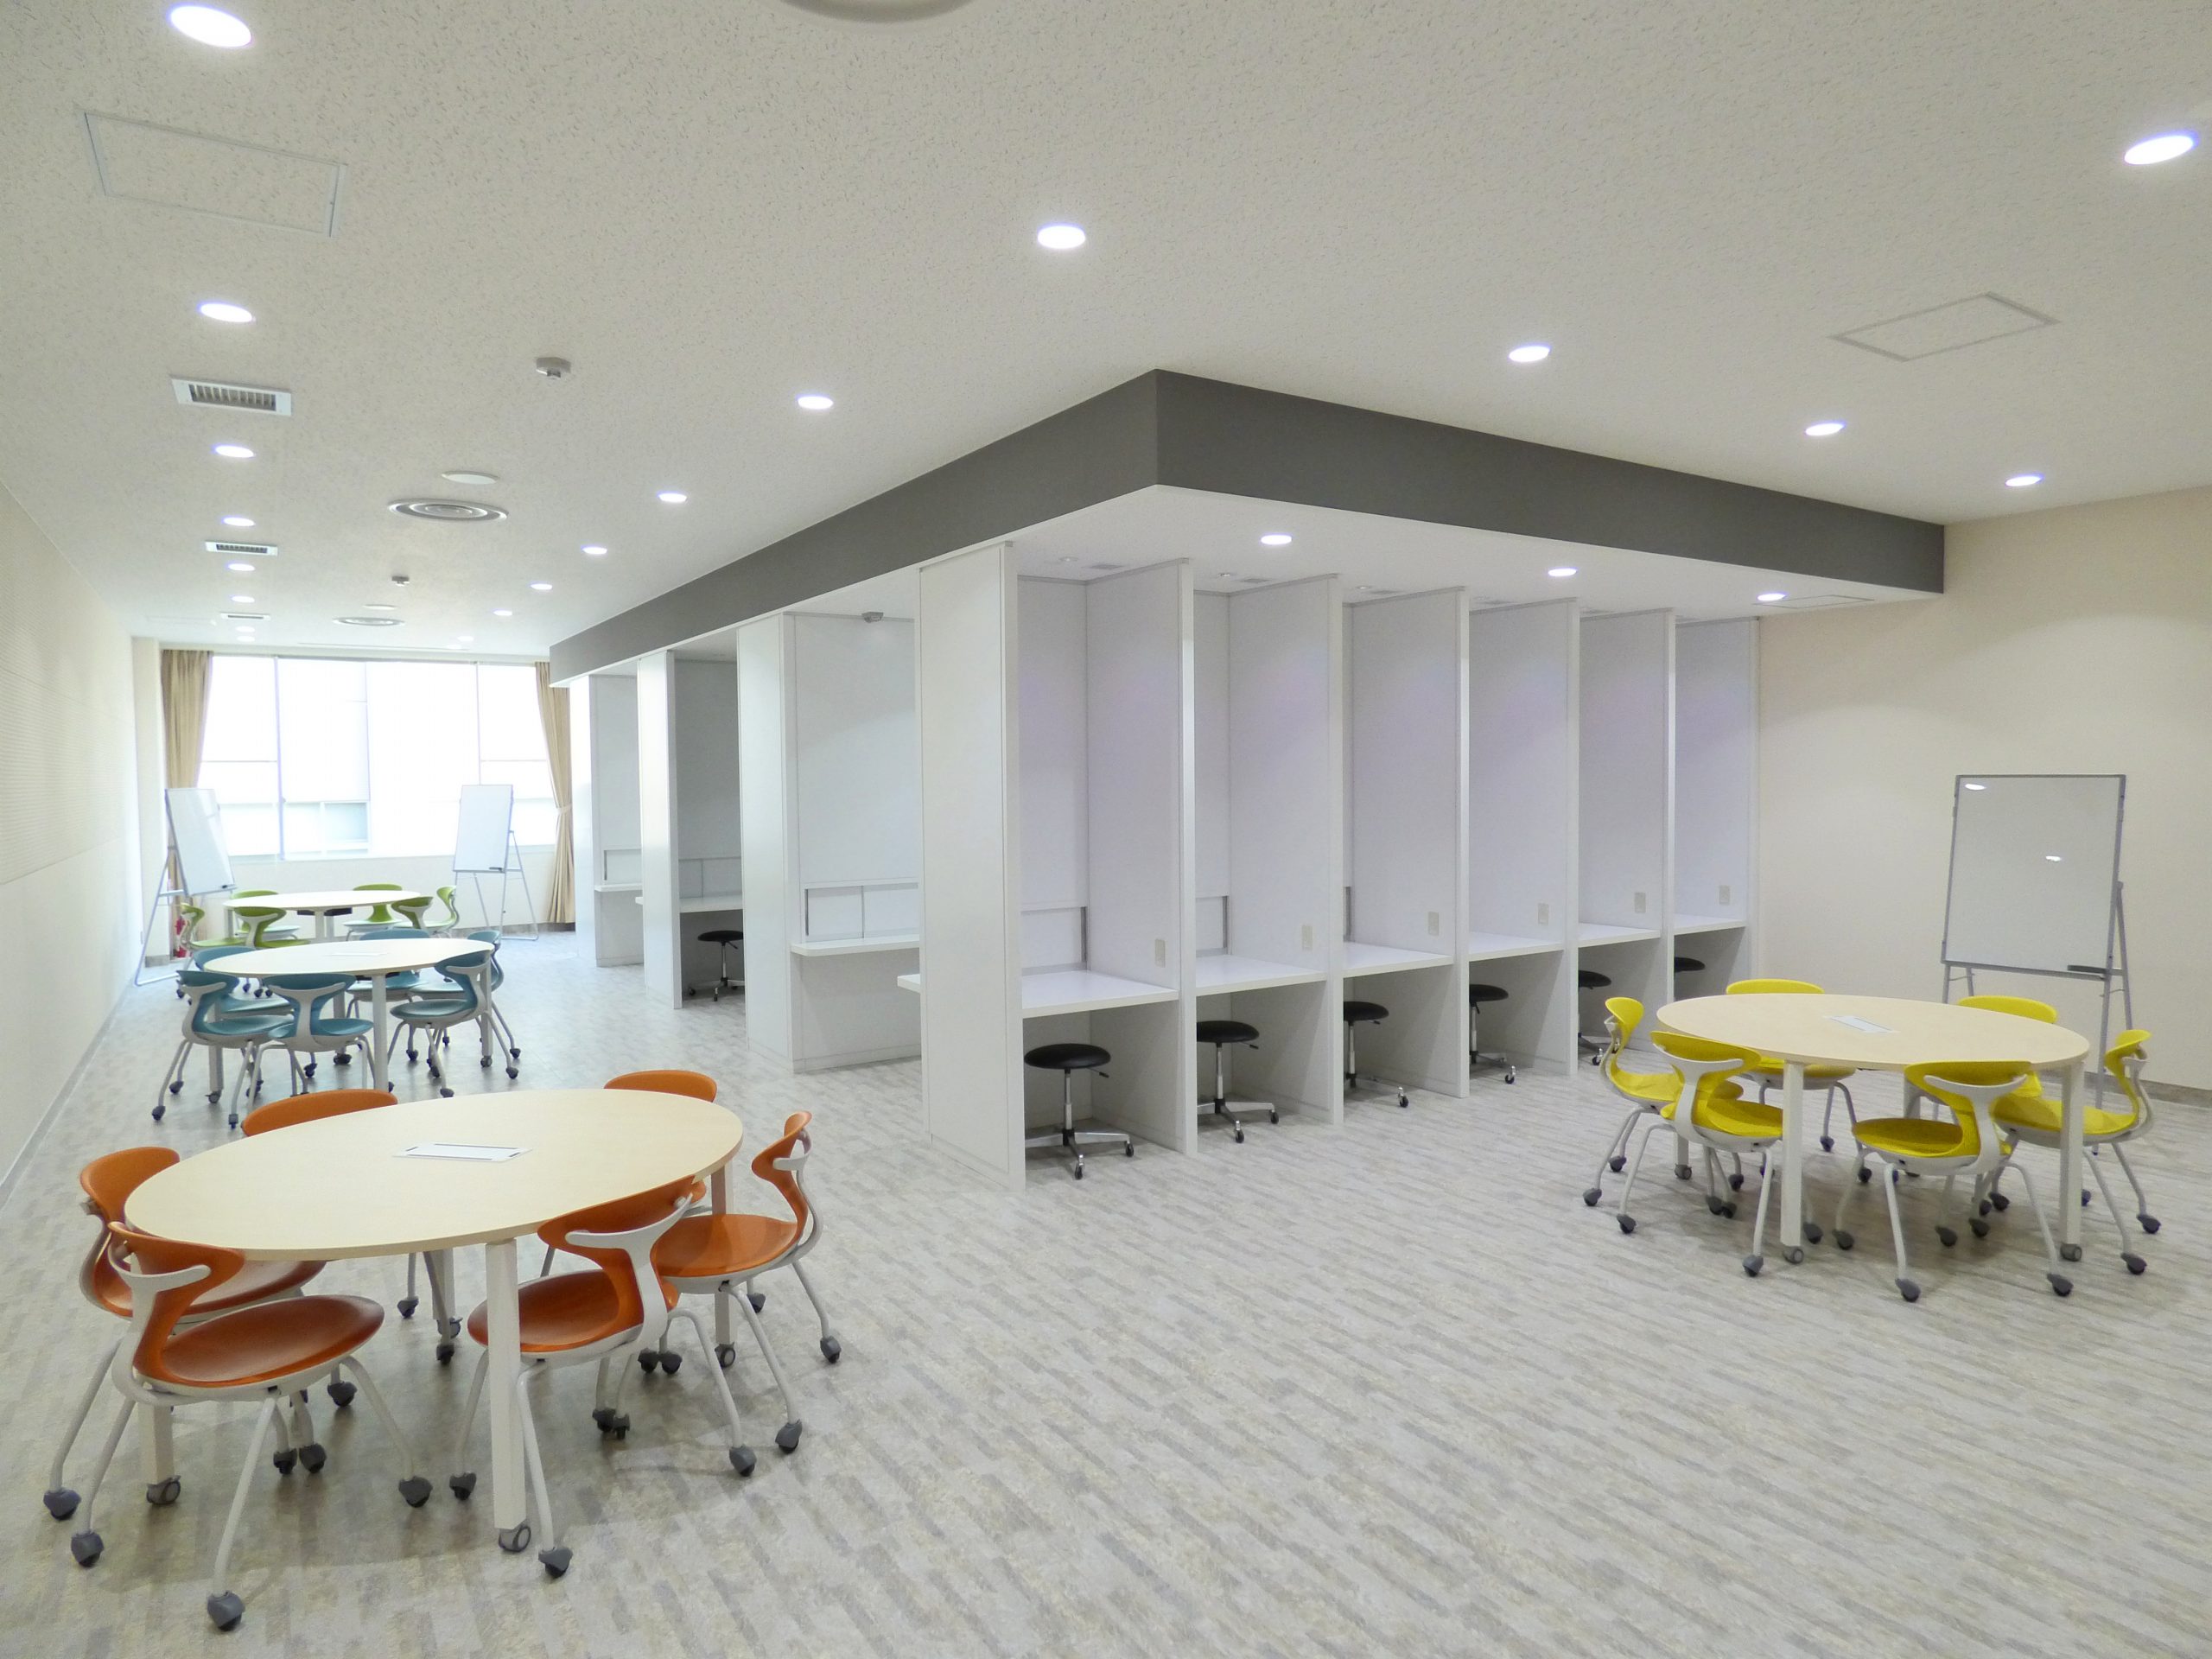 イメージ滋賀県内 大学様  学舎リノベーション